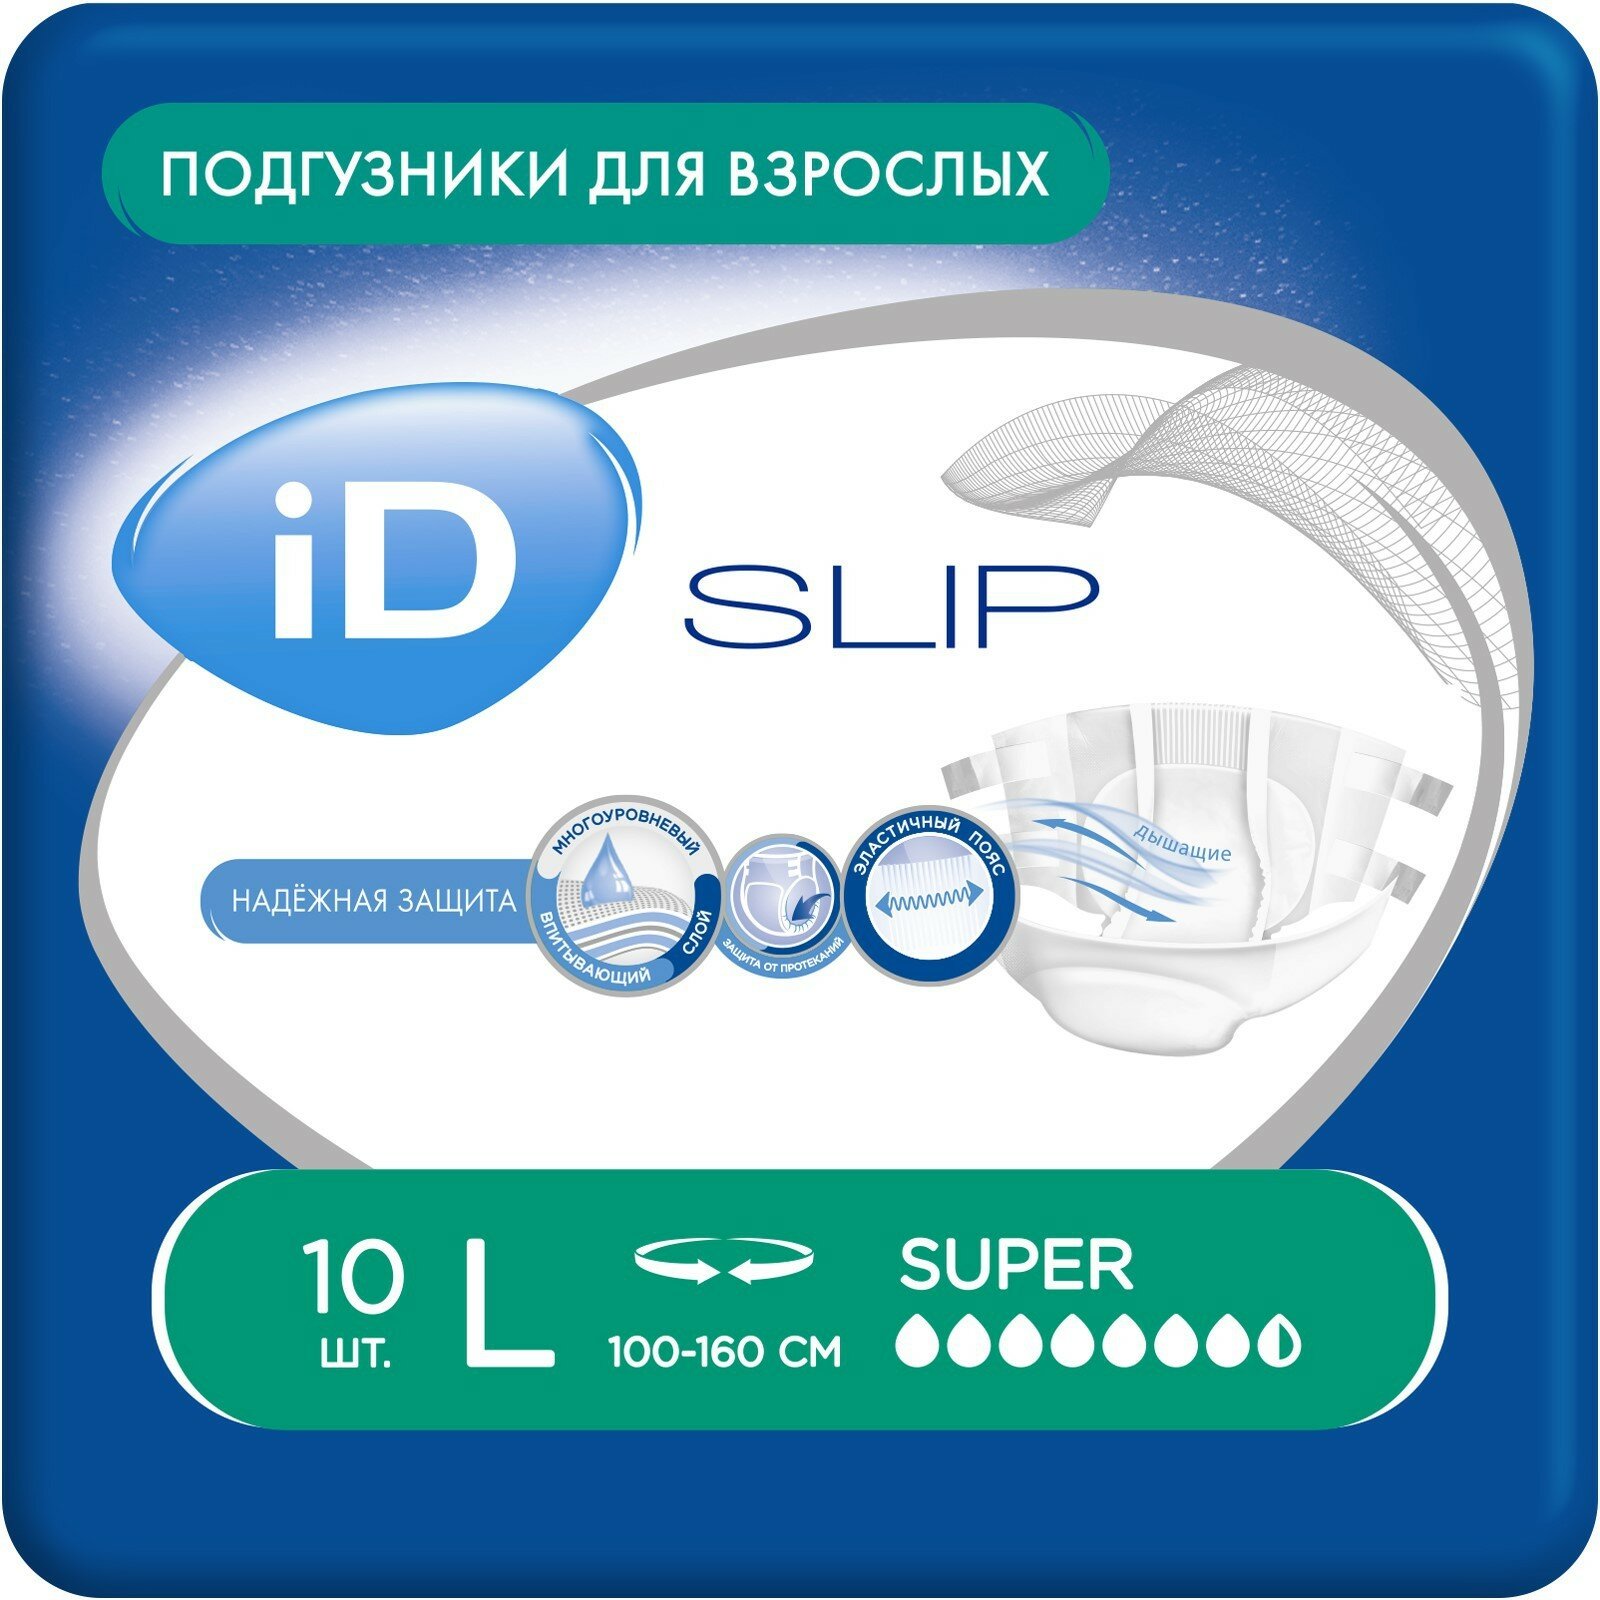 Подгузники для взрослых iD Slip L, 10шт. - фото №5